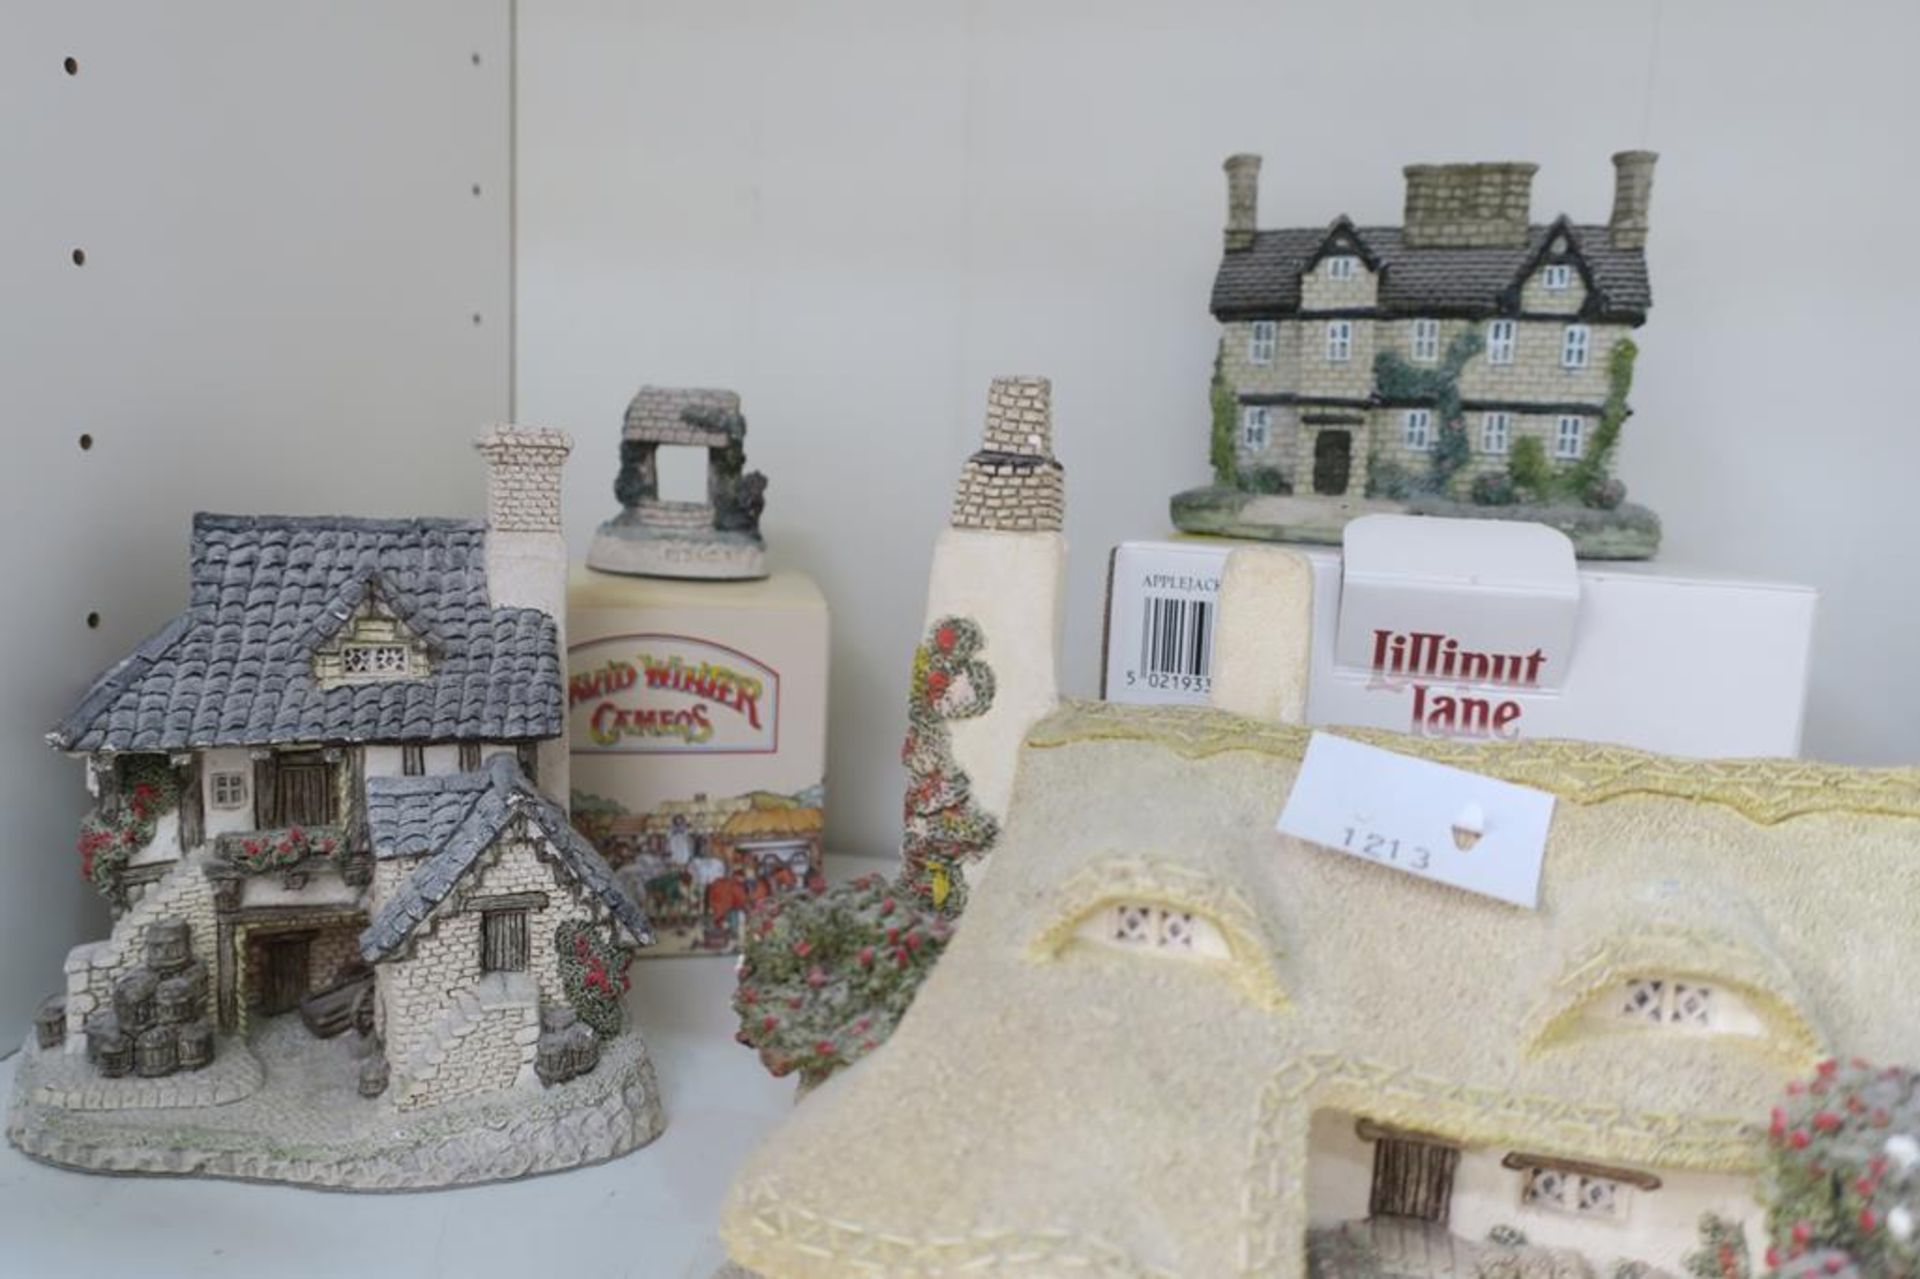 David Winter/Lilliput Lane Models of Cottages - Image 4 of 6